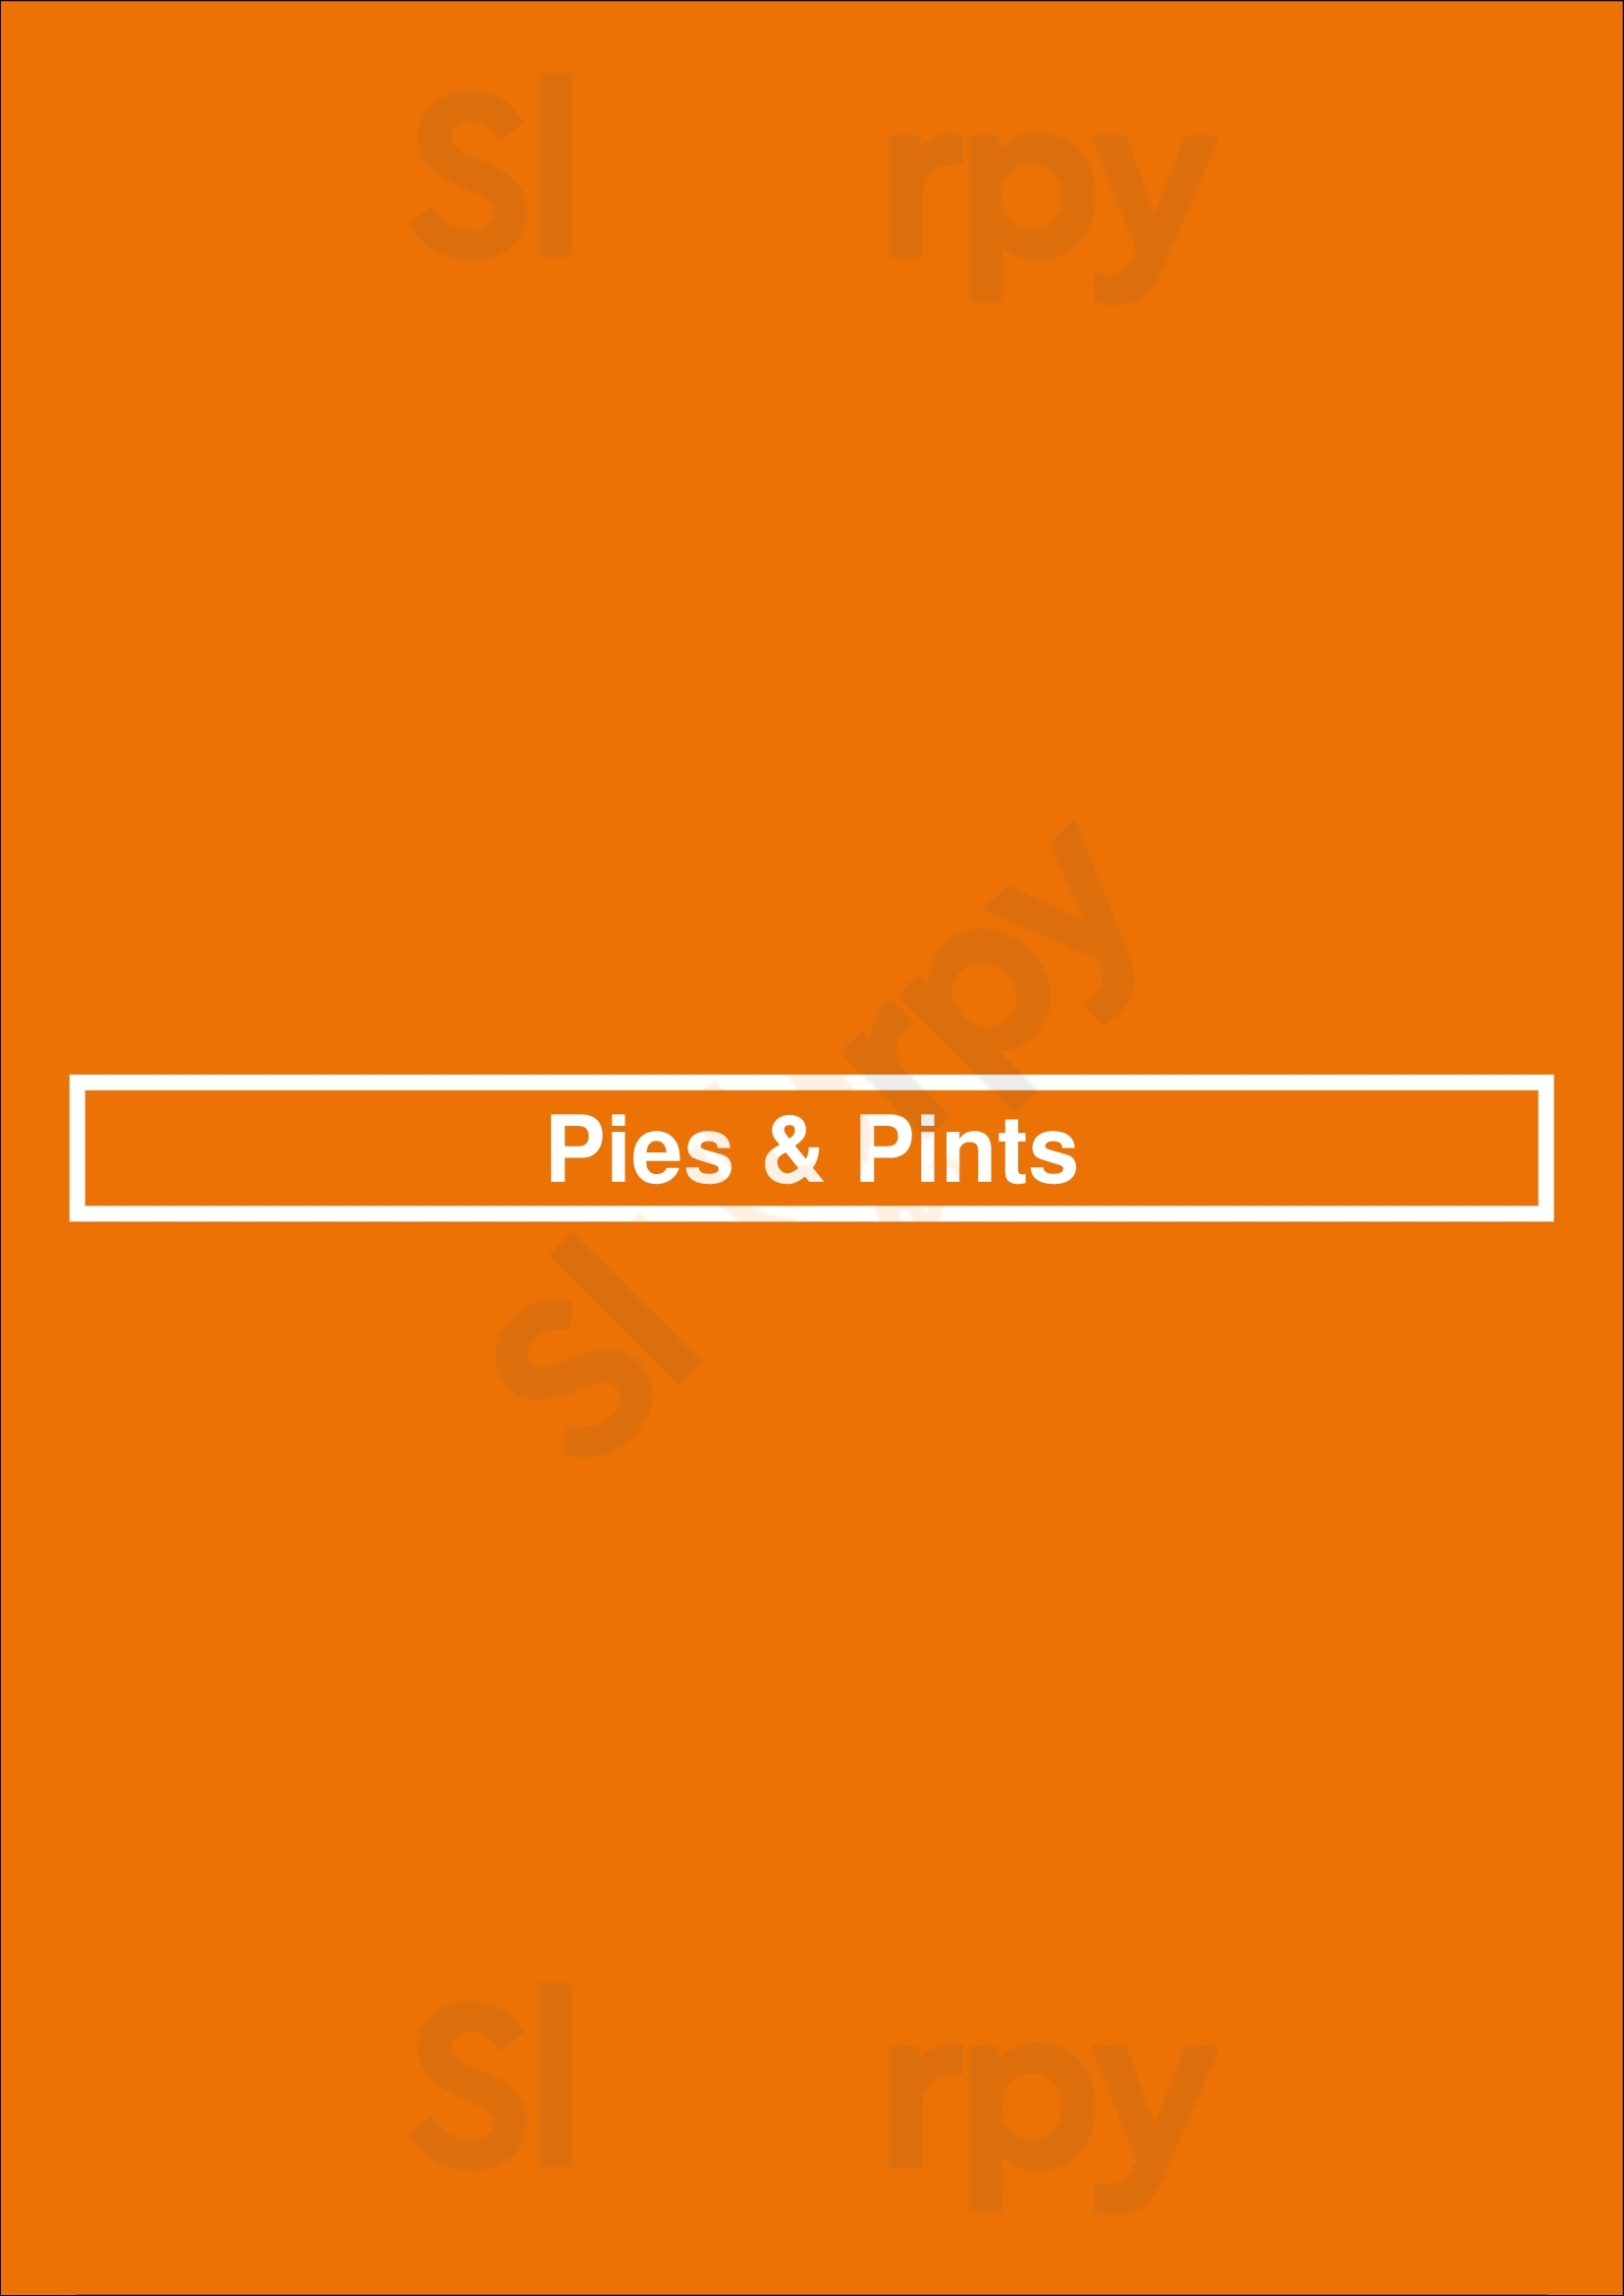 Pies & Pints Richmond Menu - 1